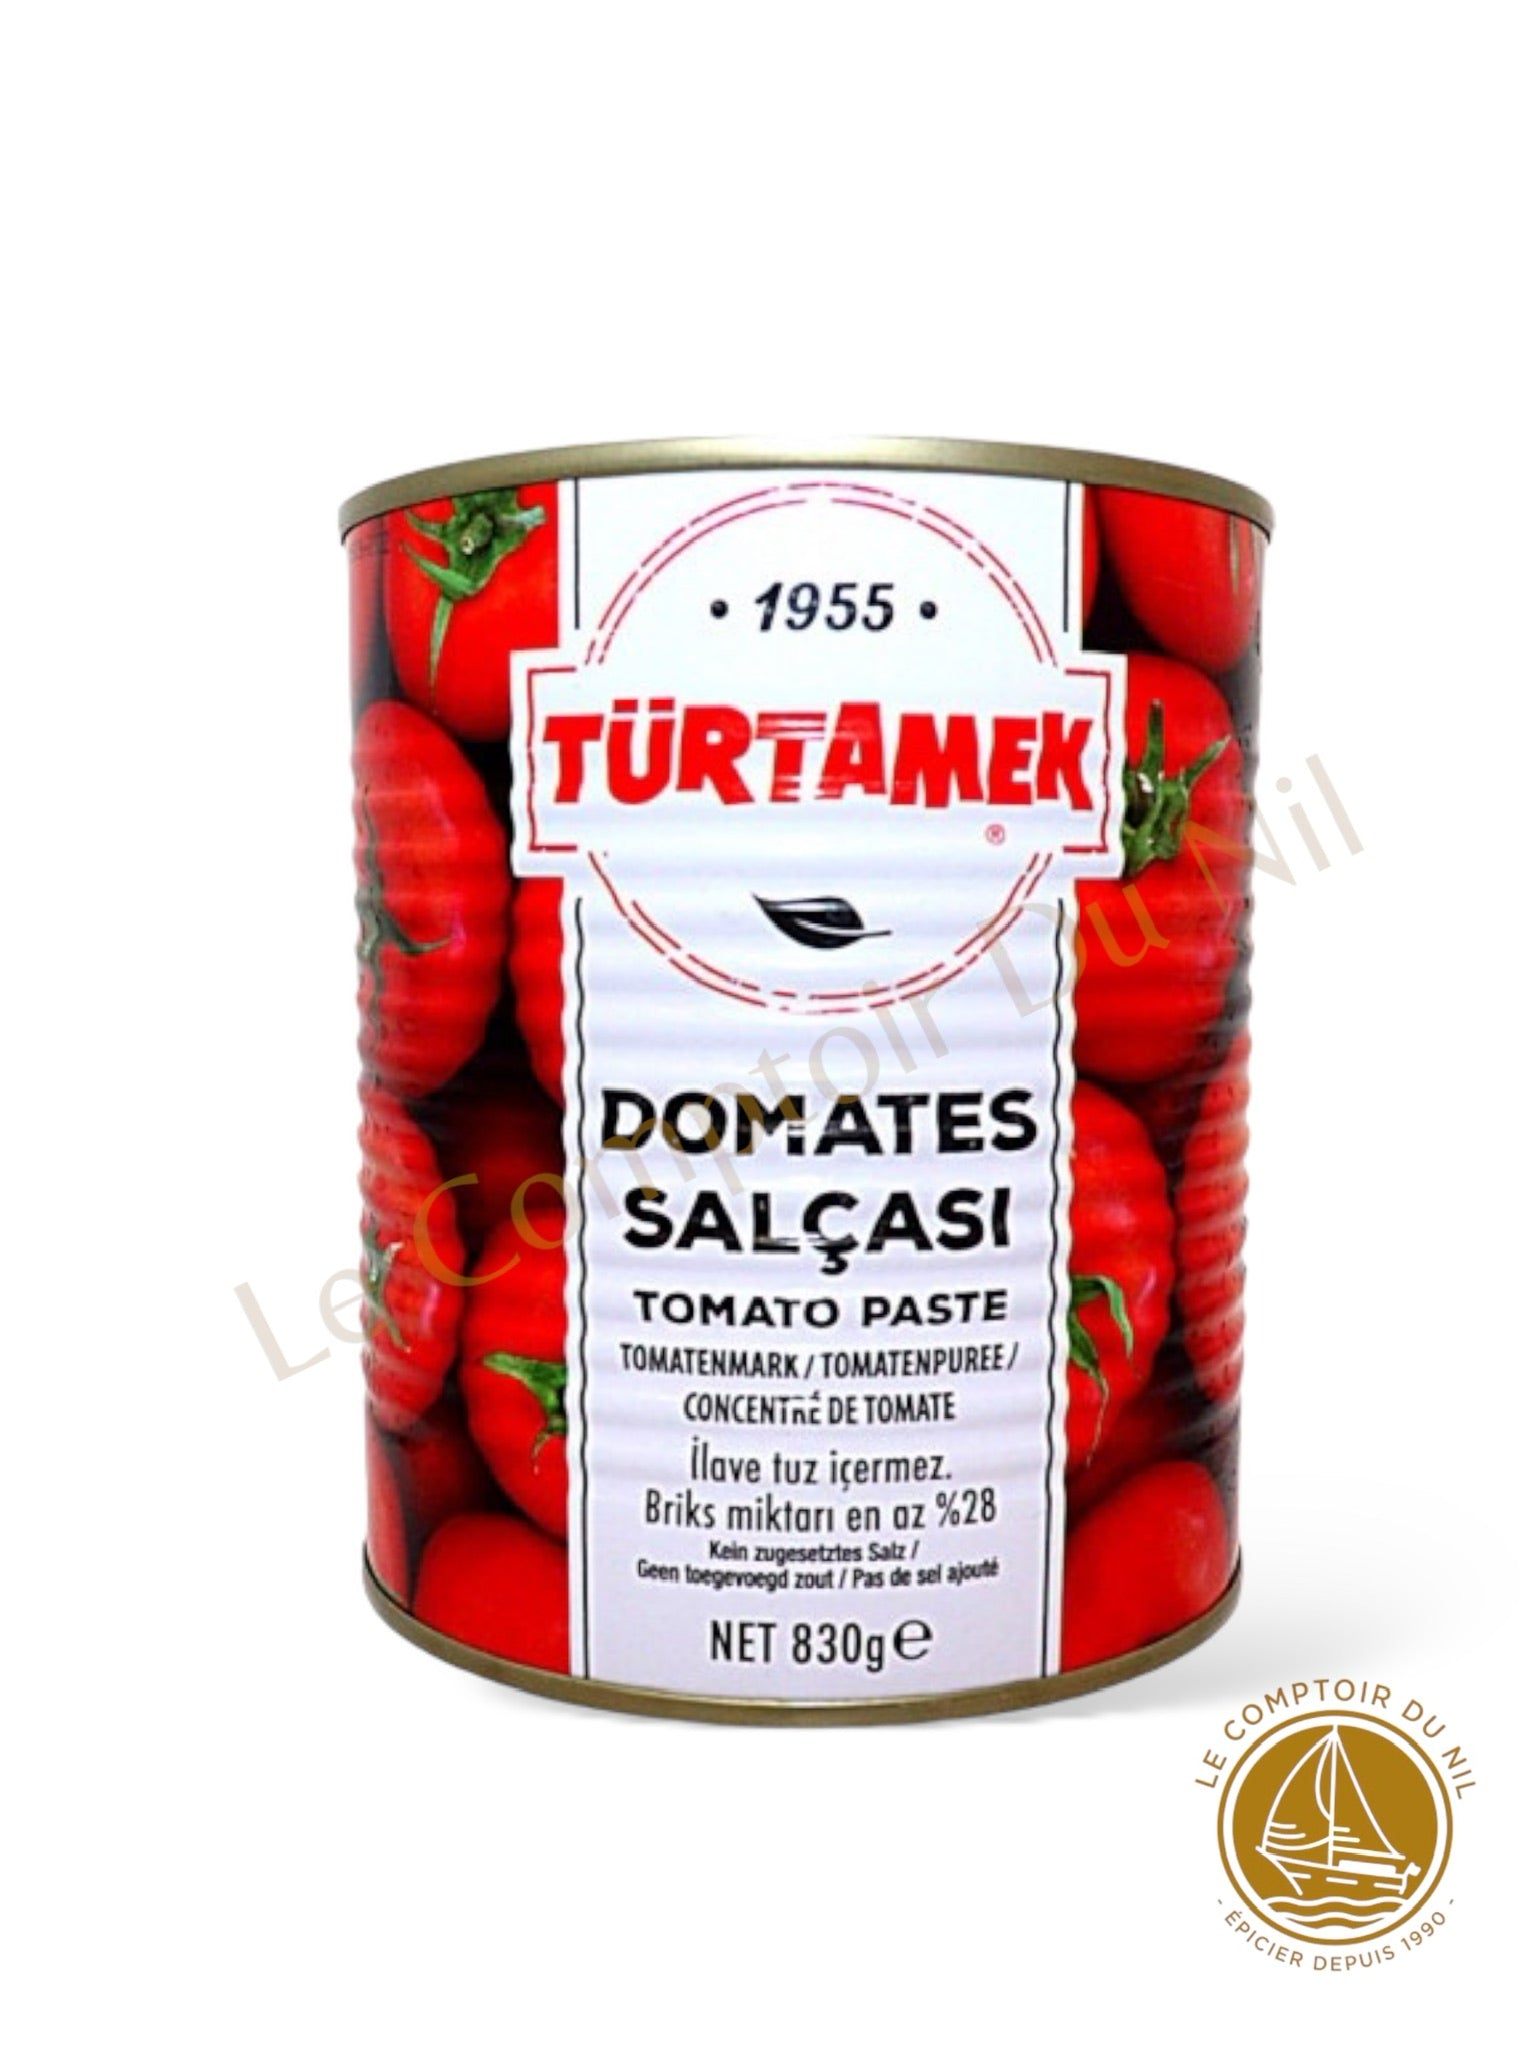 TURTAMEK - Domates / Concentré de tomates